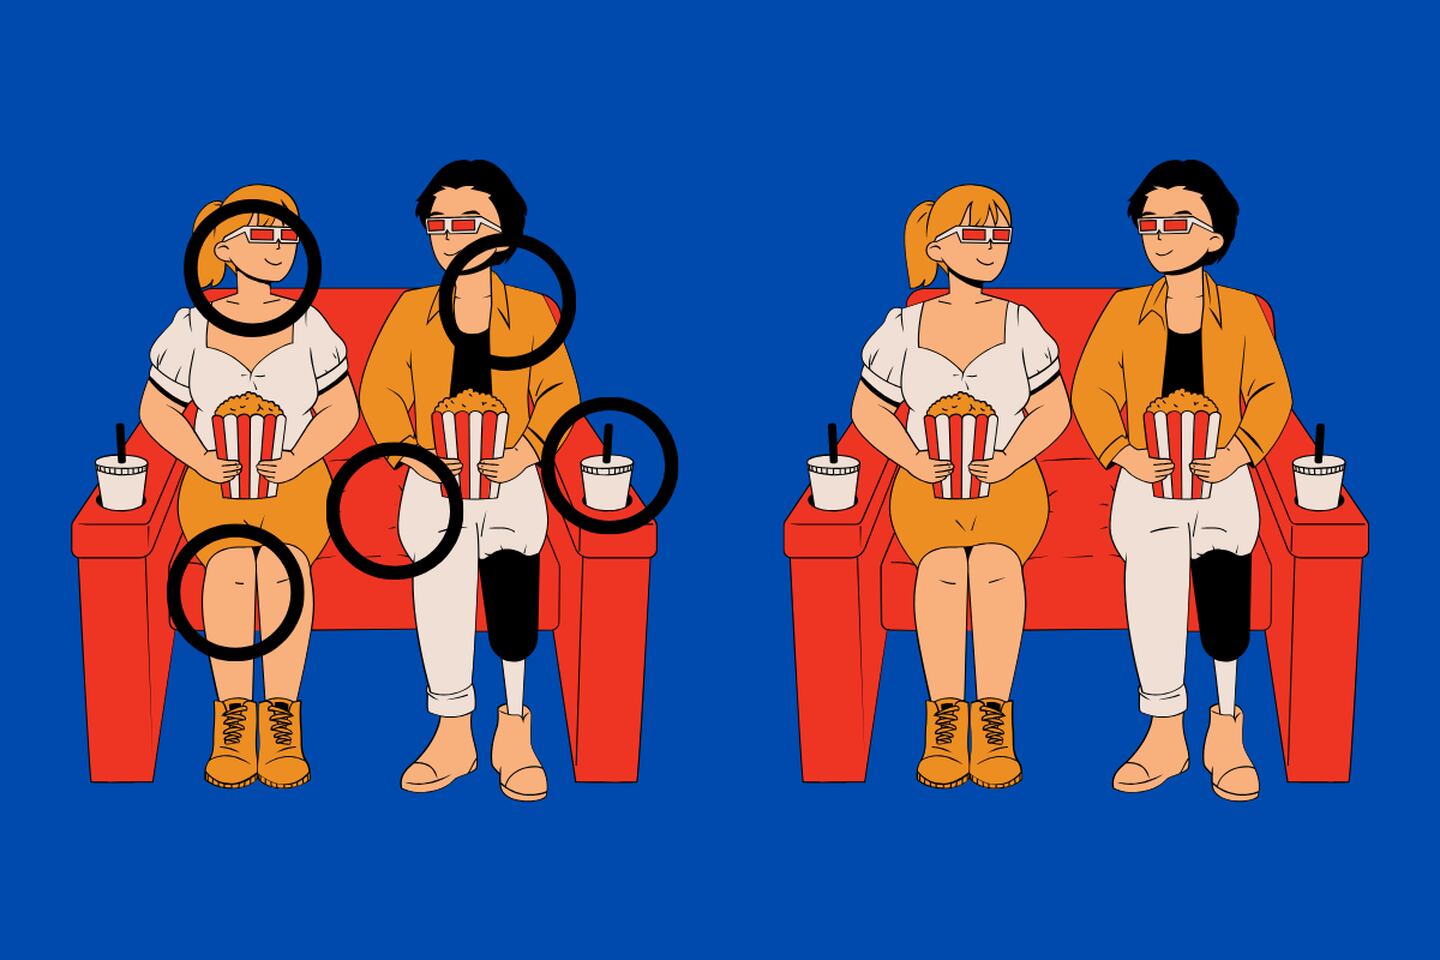 En este test visual hay dos imágenes de personas viendo una película, y aunque parecen ser las mismas, hay cinco diferencias entre ellas.